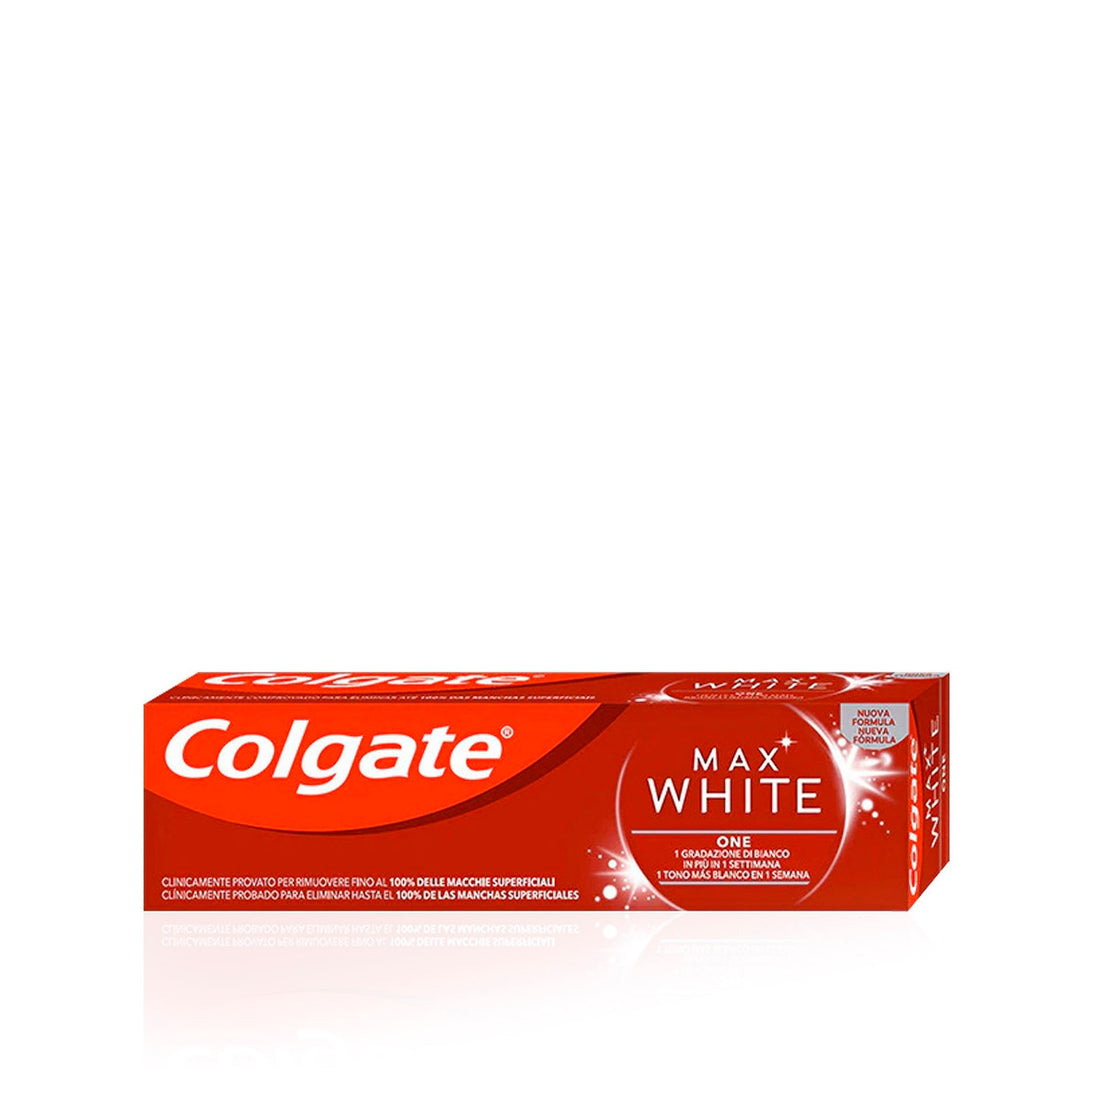 Colgate Dentifrica Paste Max White One 75 Ml